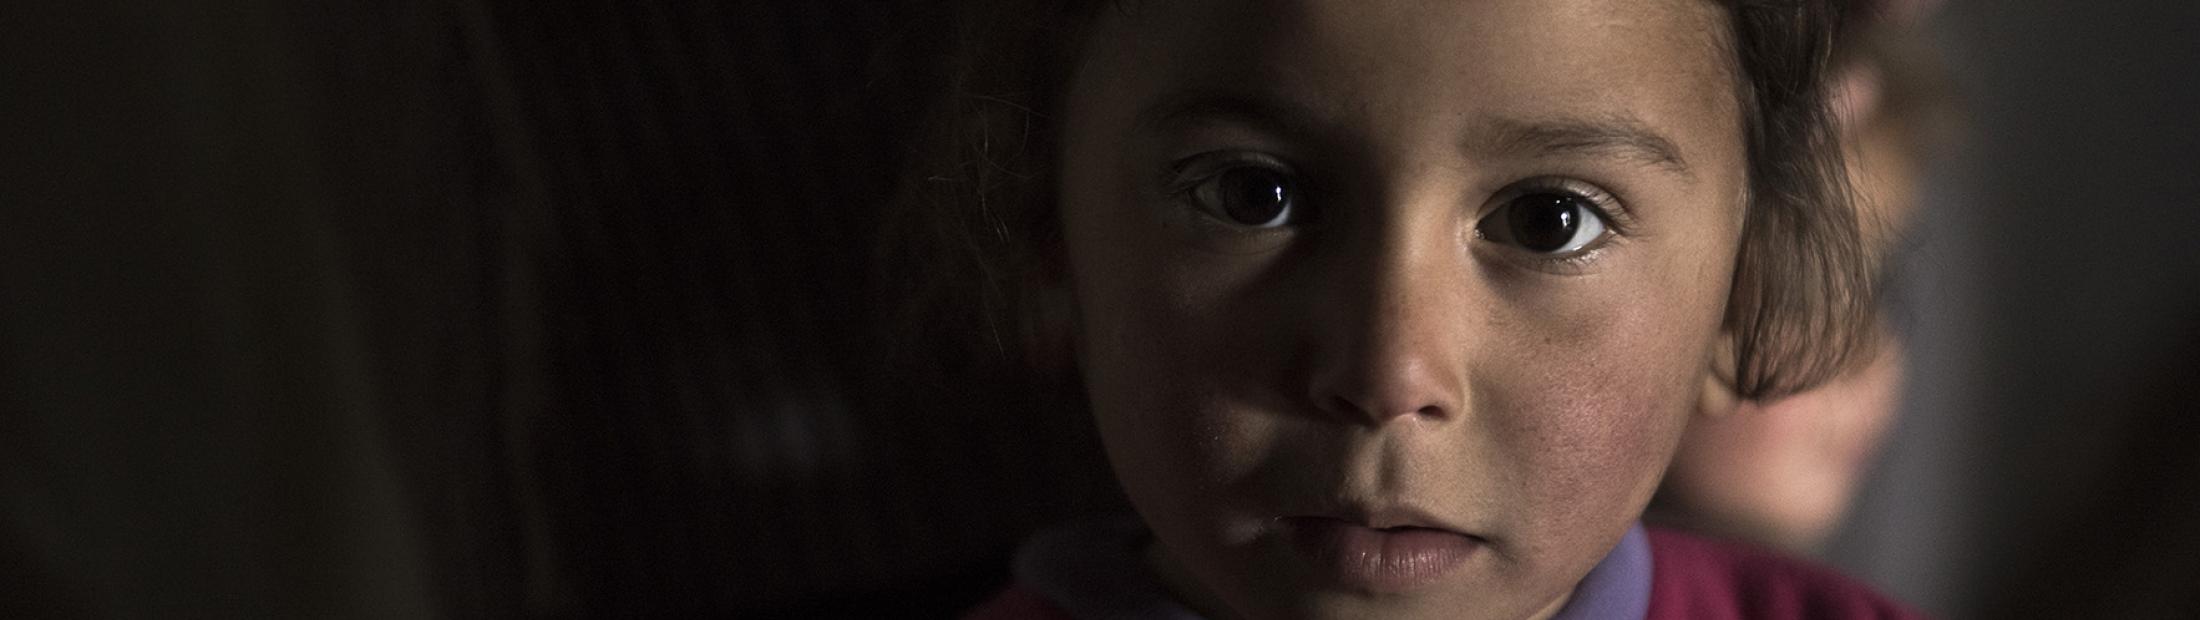 Testigos de la guerra: la historia de 6 refugiados de la guerra de Siria